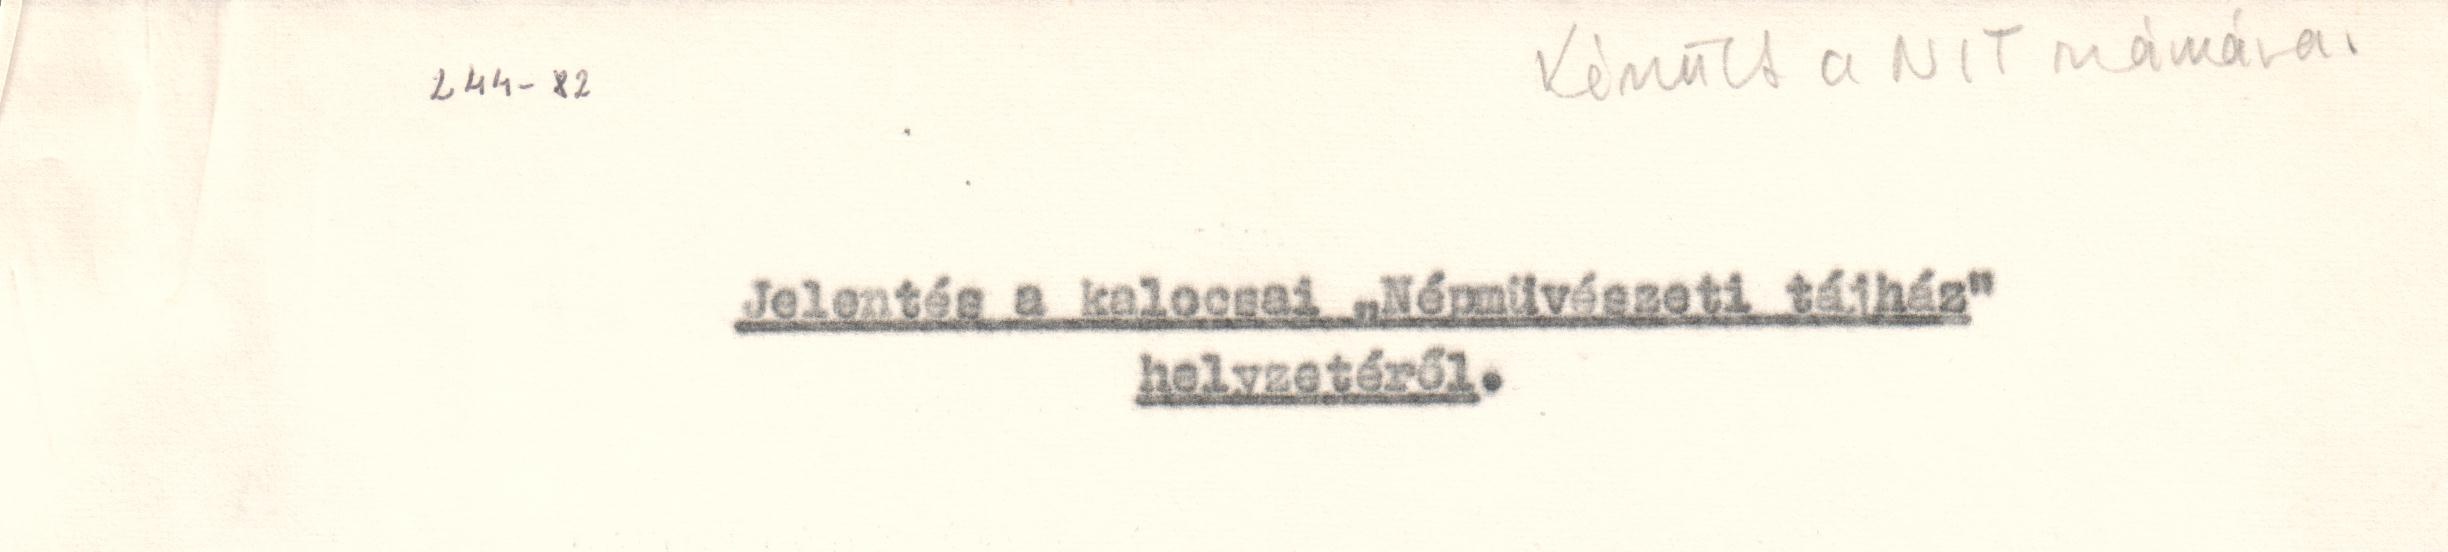 Jelentés a kalocsai "Népművészeti tájház" helyzetéről gépirata. (Viski Károly Múzeum Kalocsa RR-F)